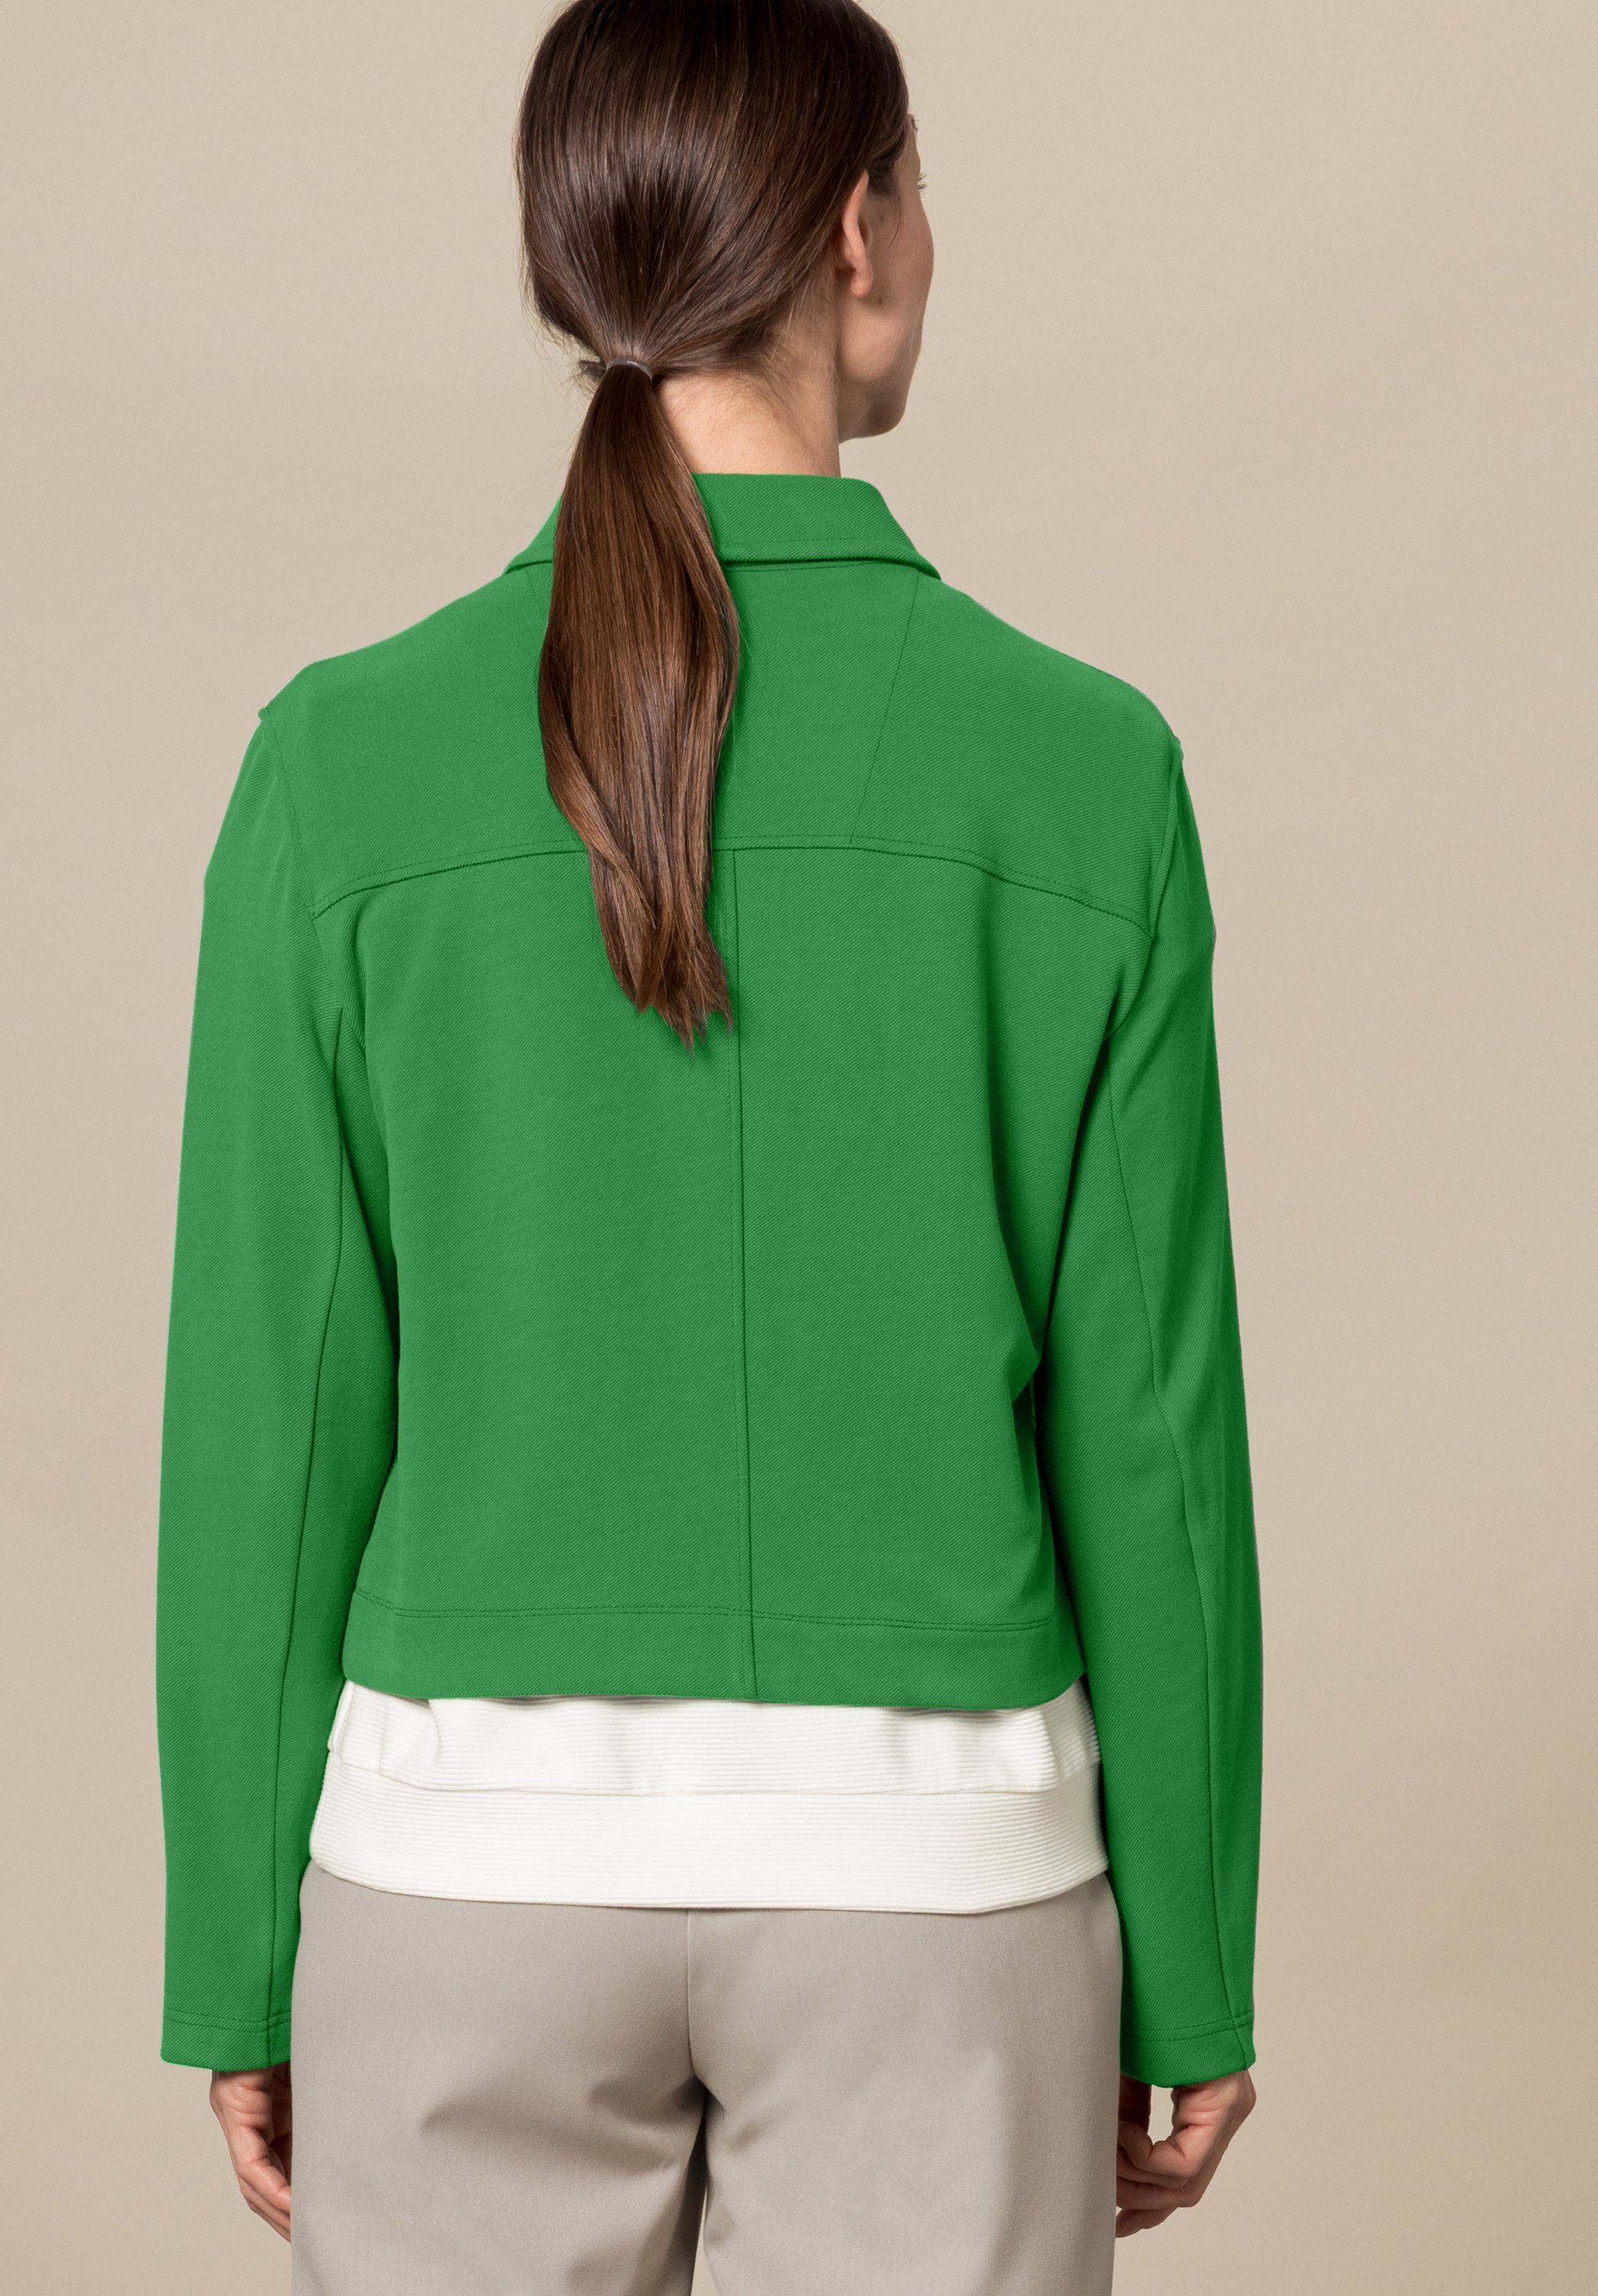 MIRANDA dark in Details bianca stylischen Trendfarbe greenery mit Kurzjacke angesagter